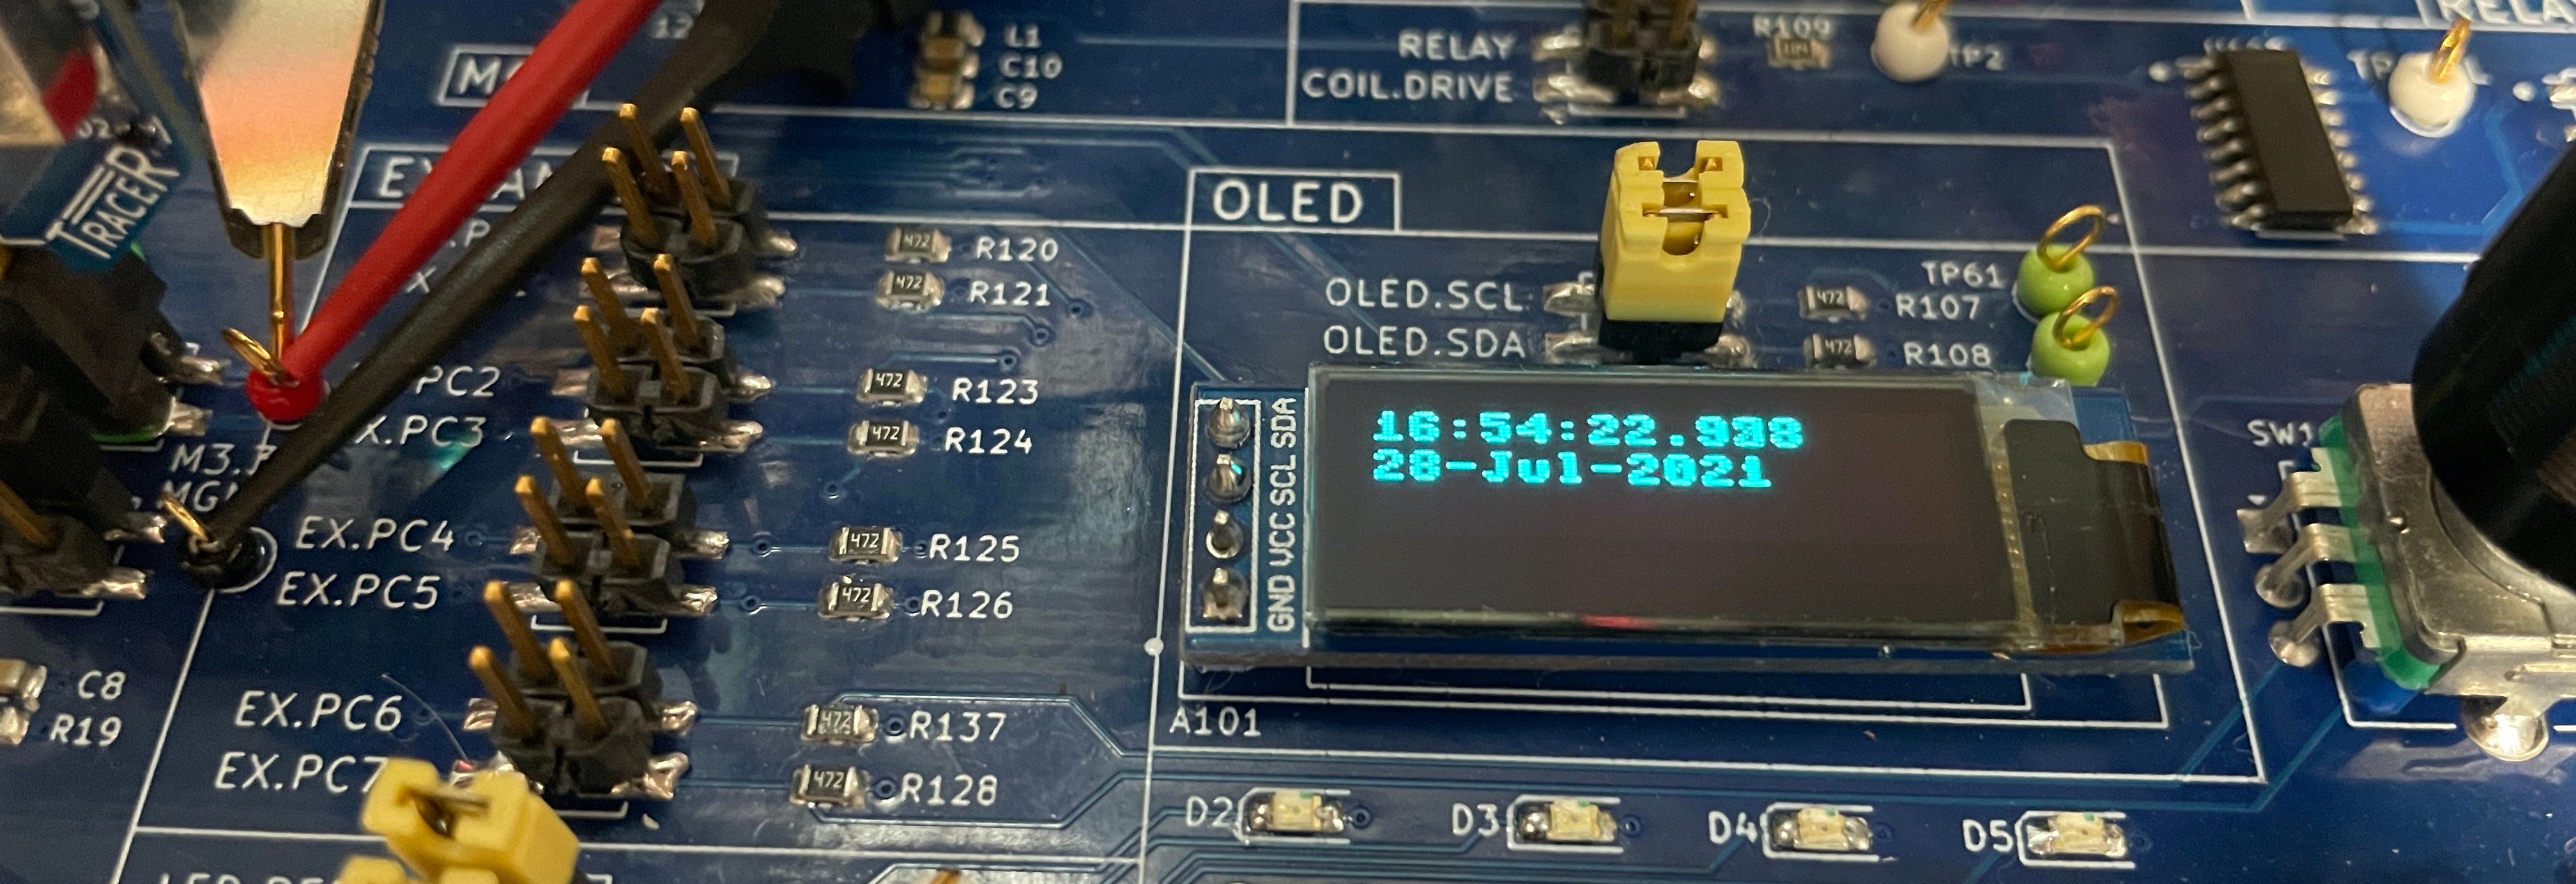 dc-testing-clock-display